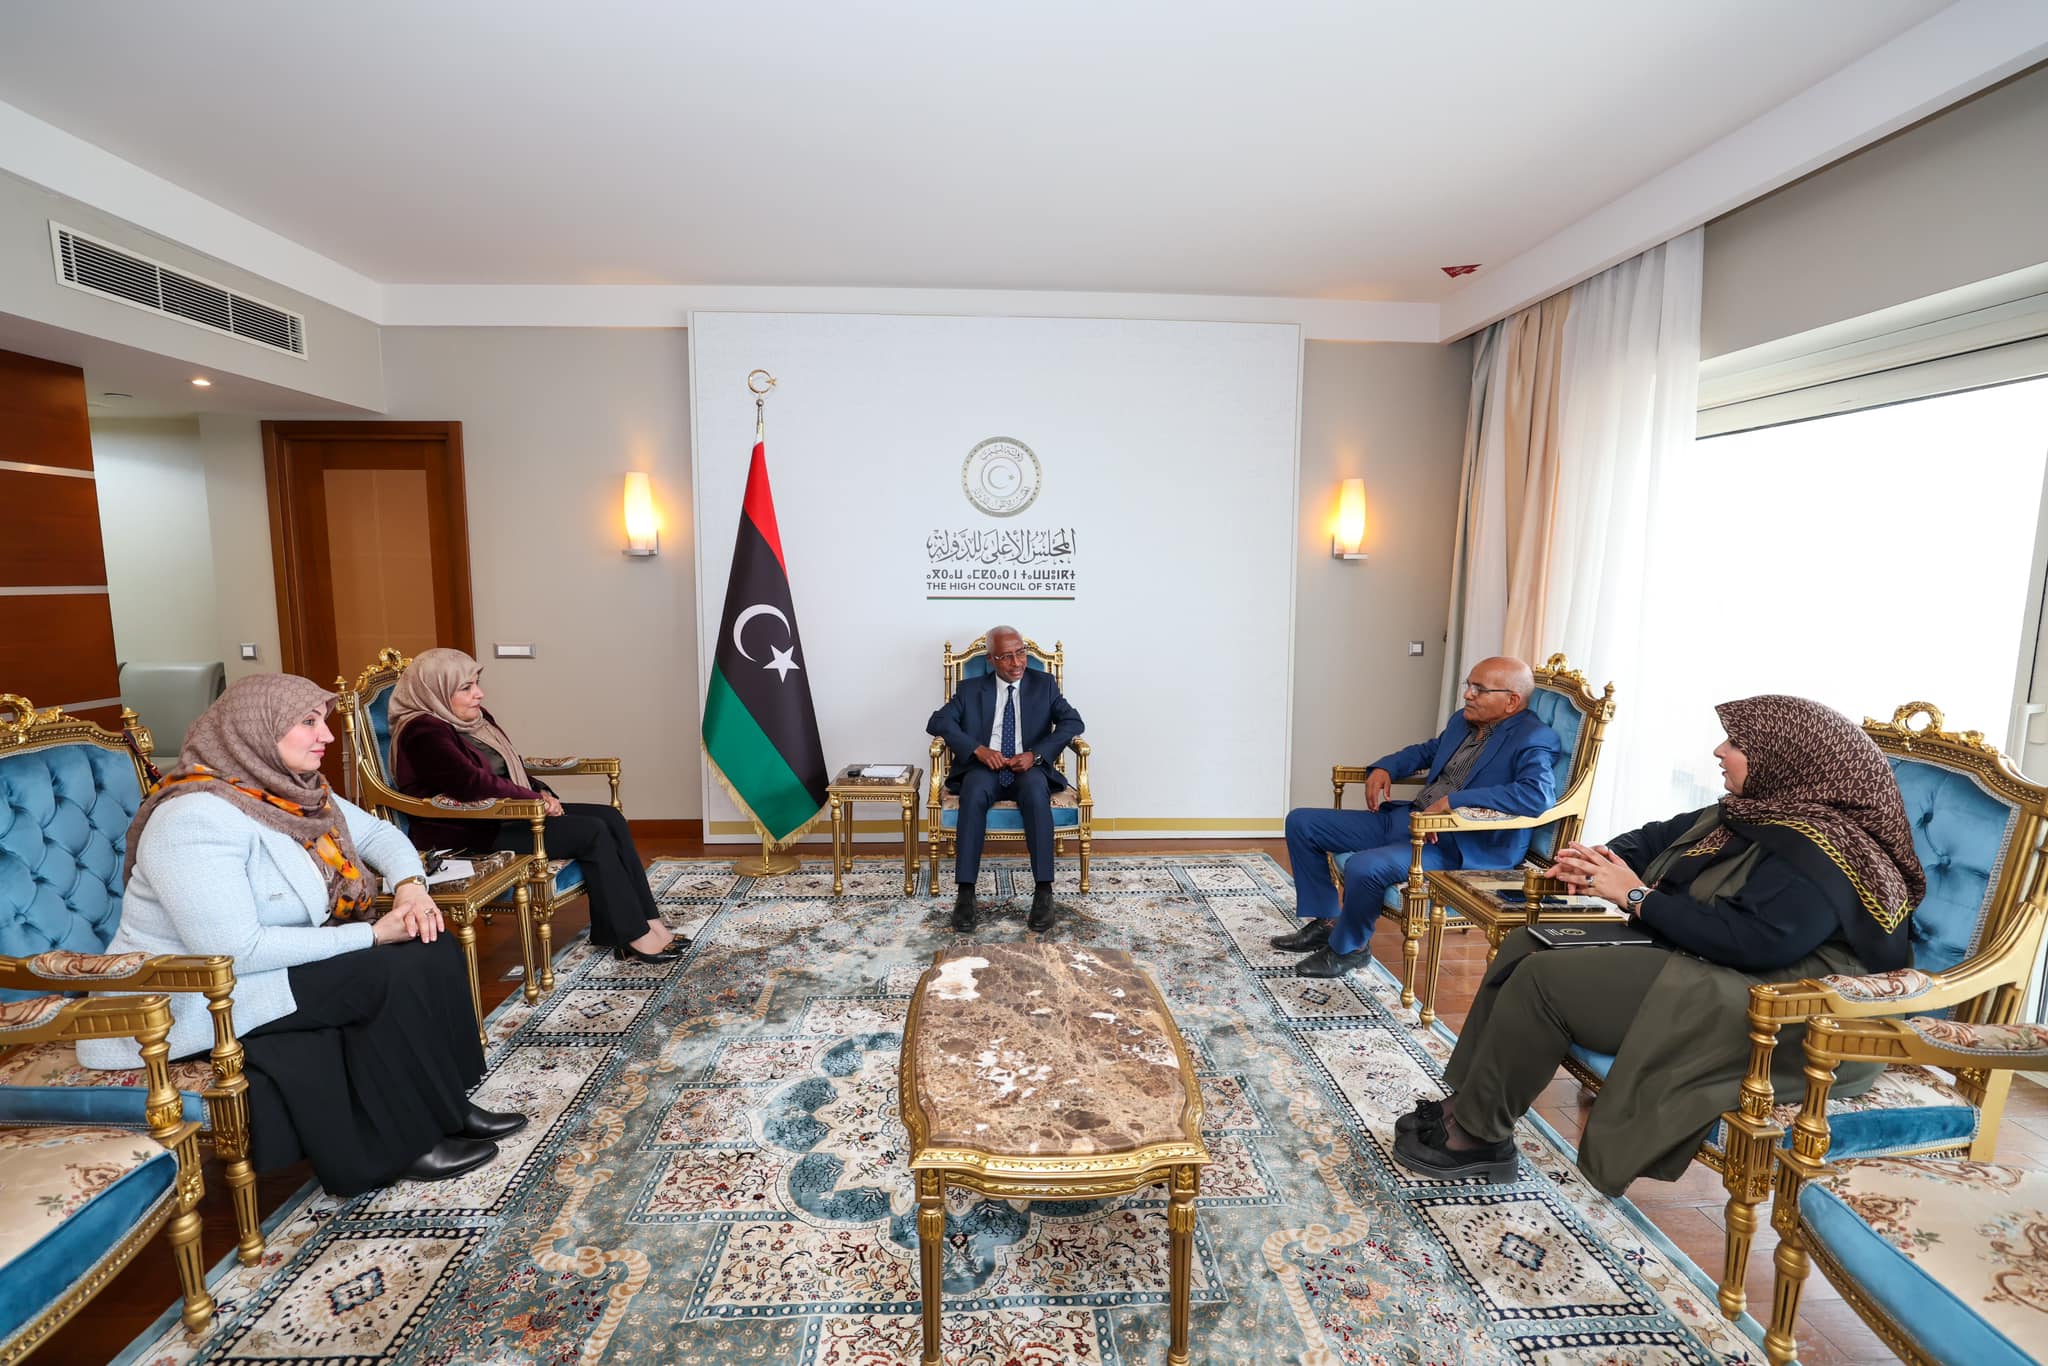  النائب الأول لرئيس مجلس الاعلى الدولة بستعرض مع وفدٍ من حراك "أحرار الوطن" آخر مستجدات المشهد السياسي فى ليبيا .